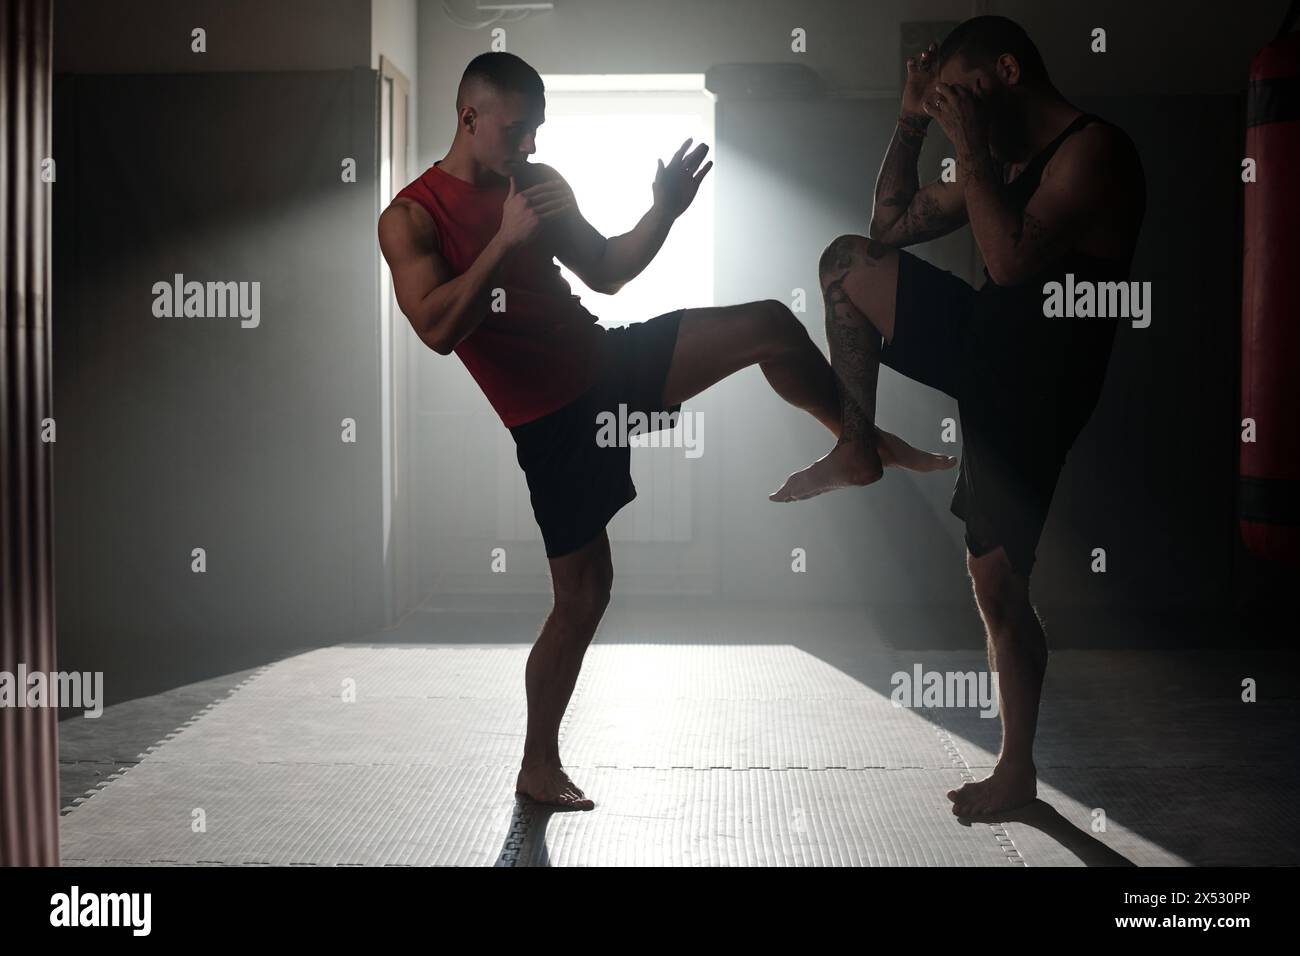 Silhouetten zweier junger starker Männer in Sportbekleidung, die auf dem Boden des Fitnessstudios stehen und vor dem Wettkampf Beintritte üben Stockfoto